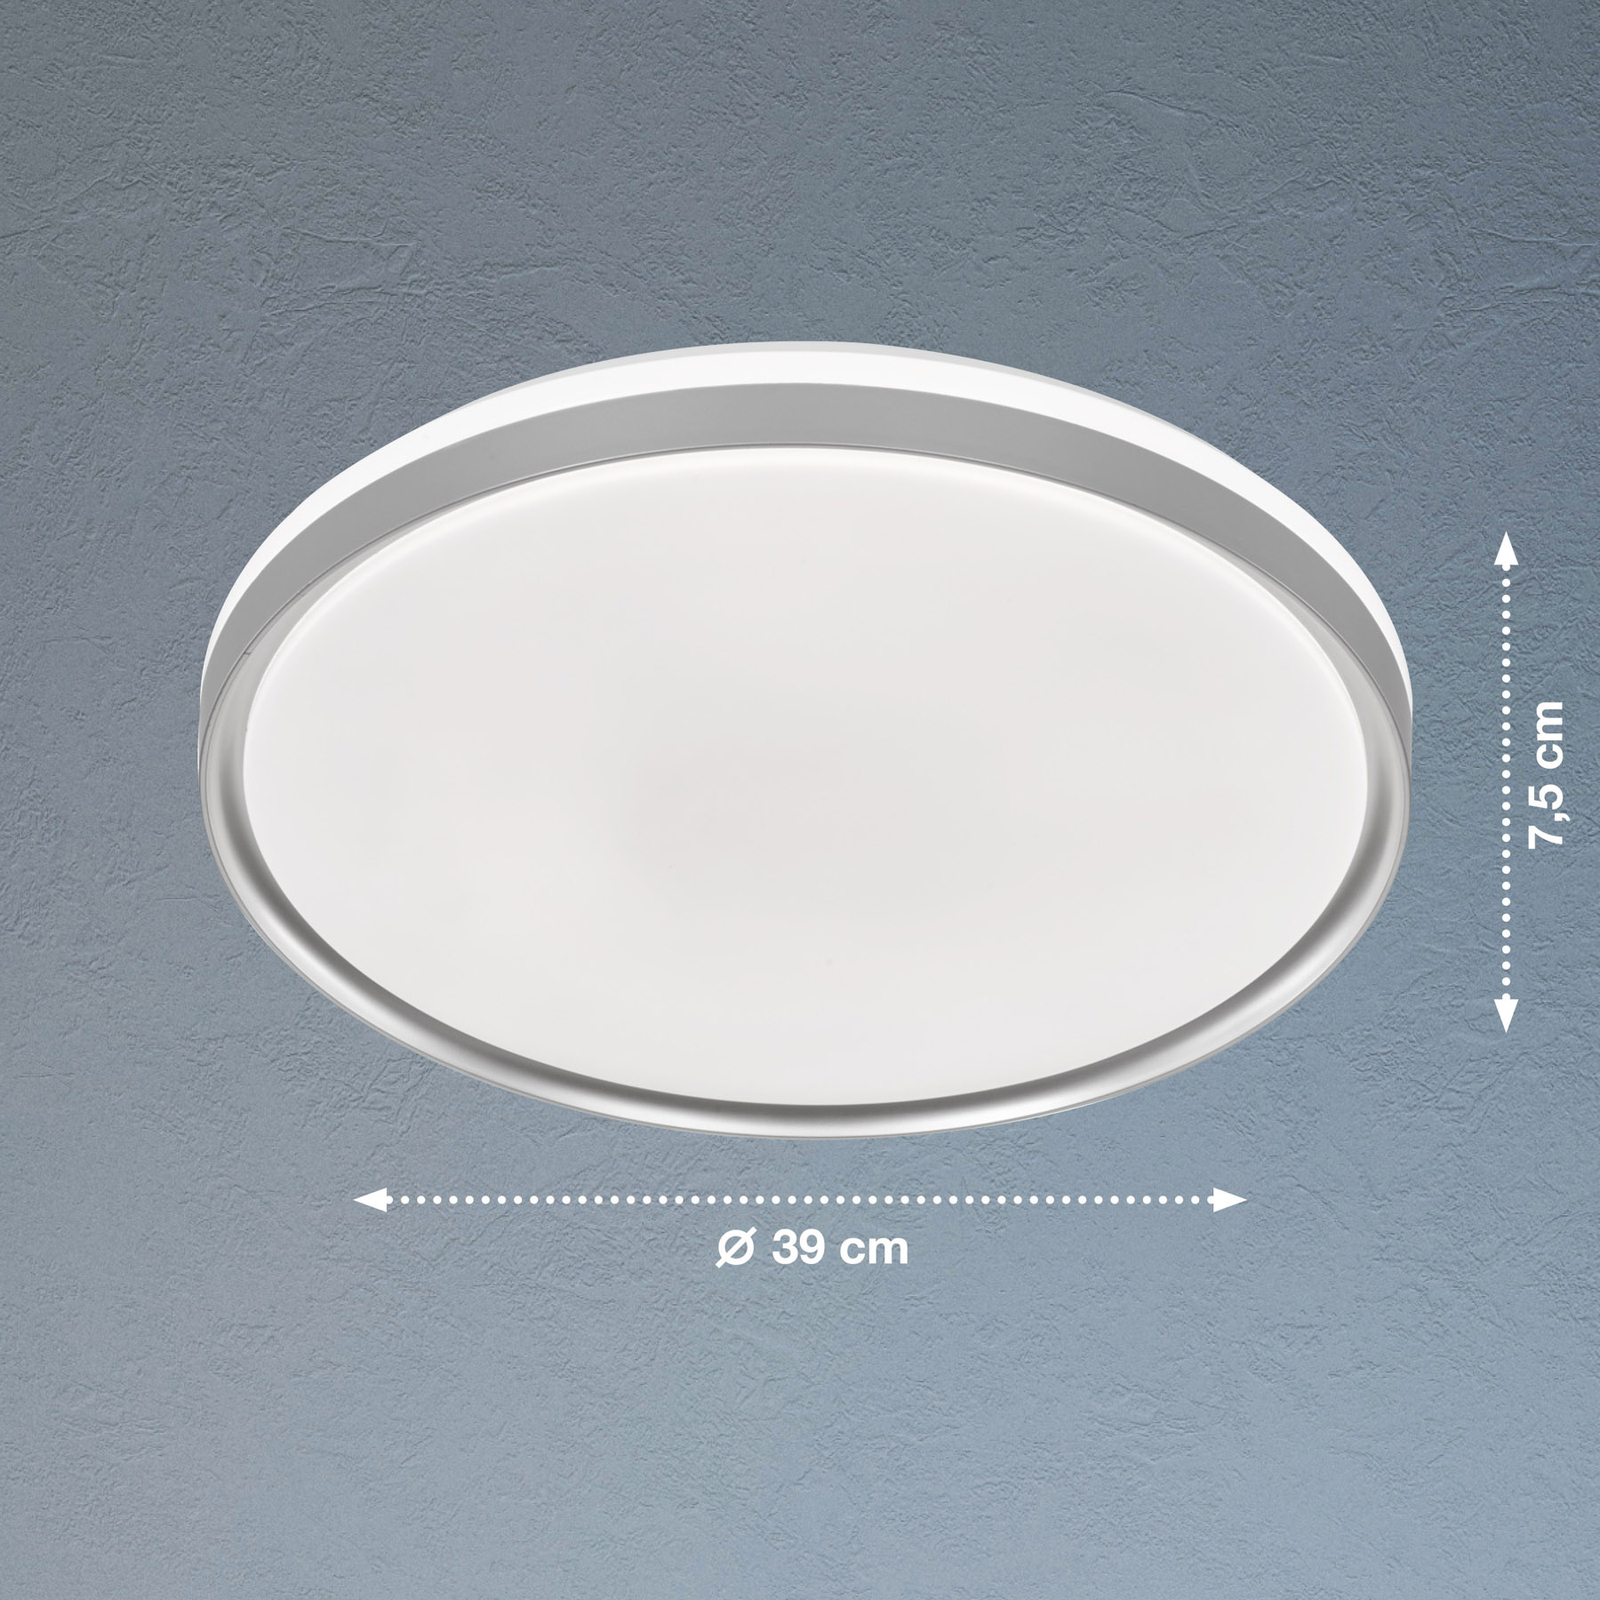 LED stropní světlo Jaso BS, Ø 39 cm, stříbrná